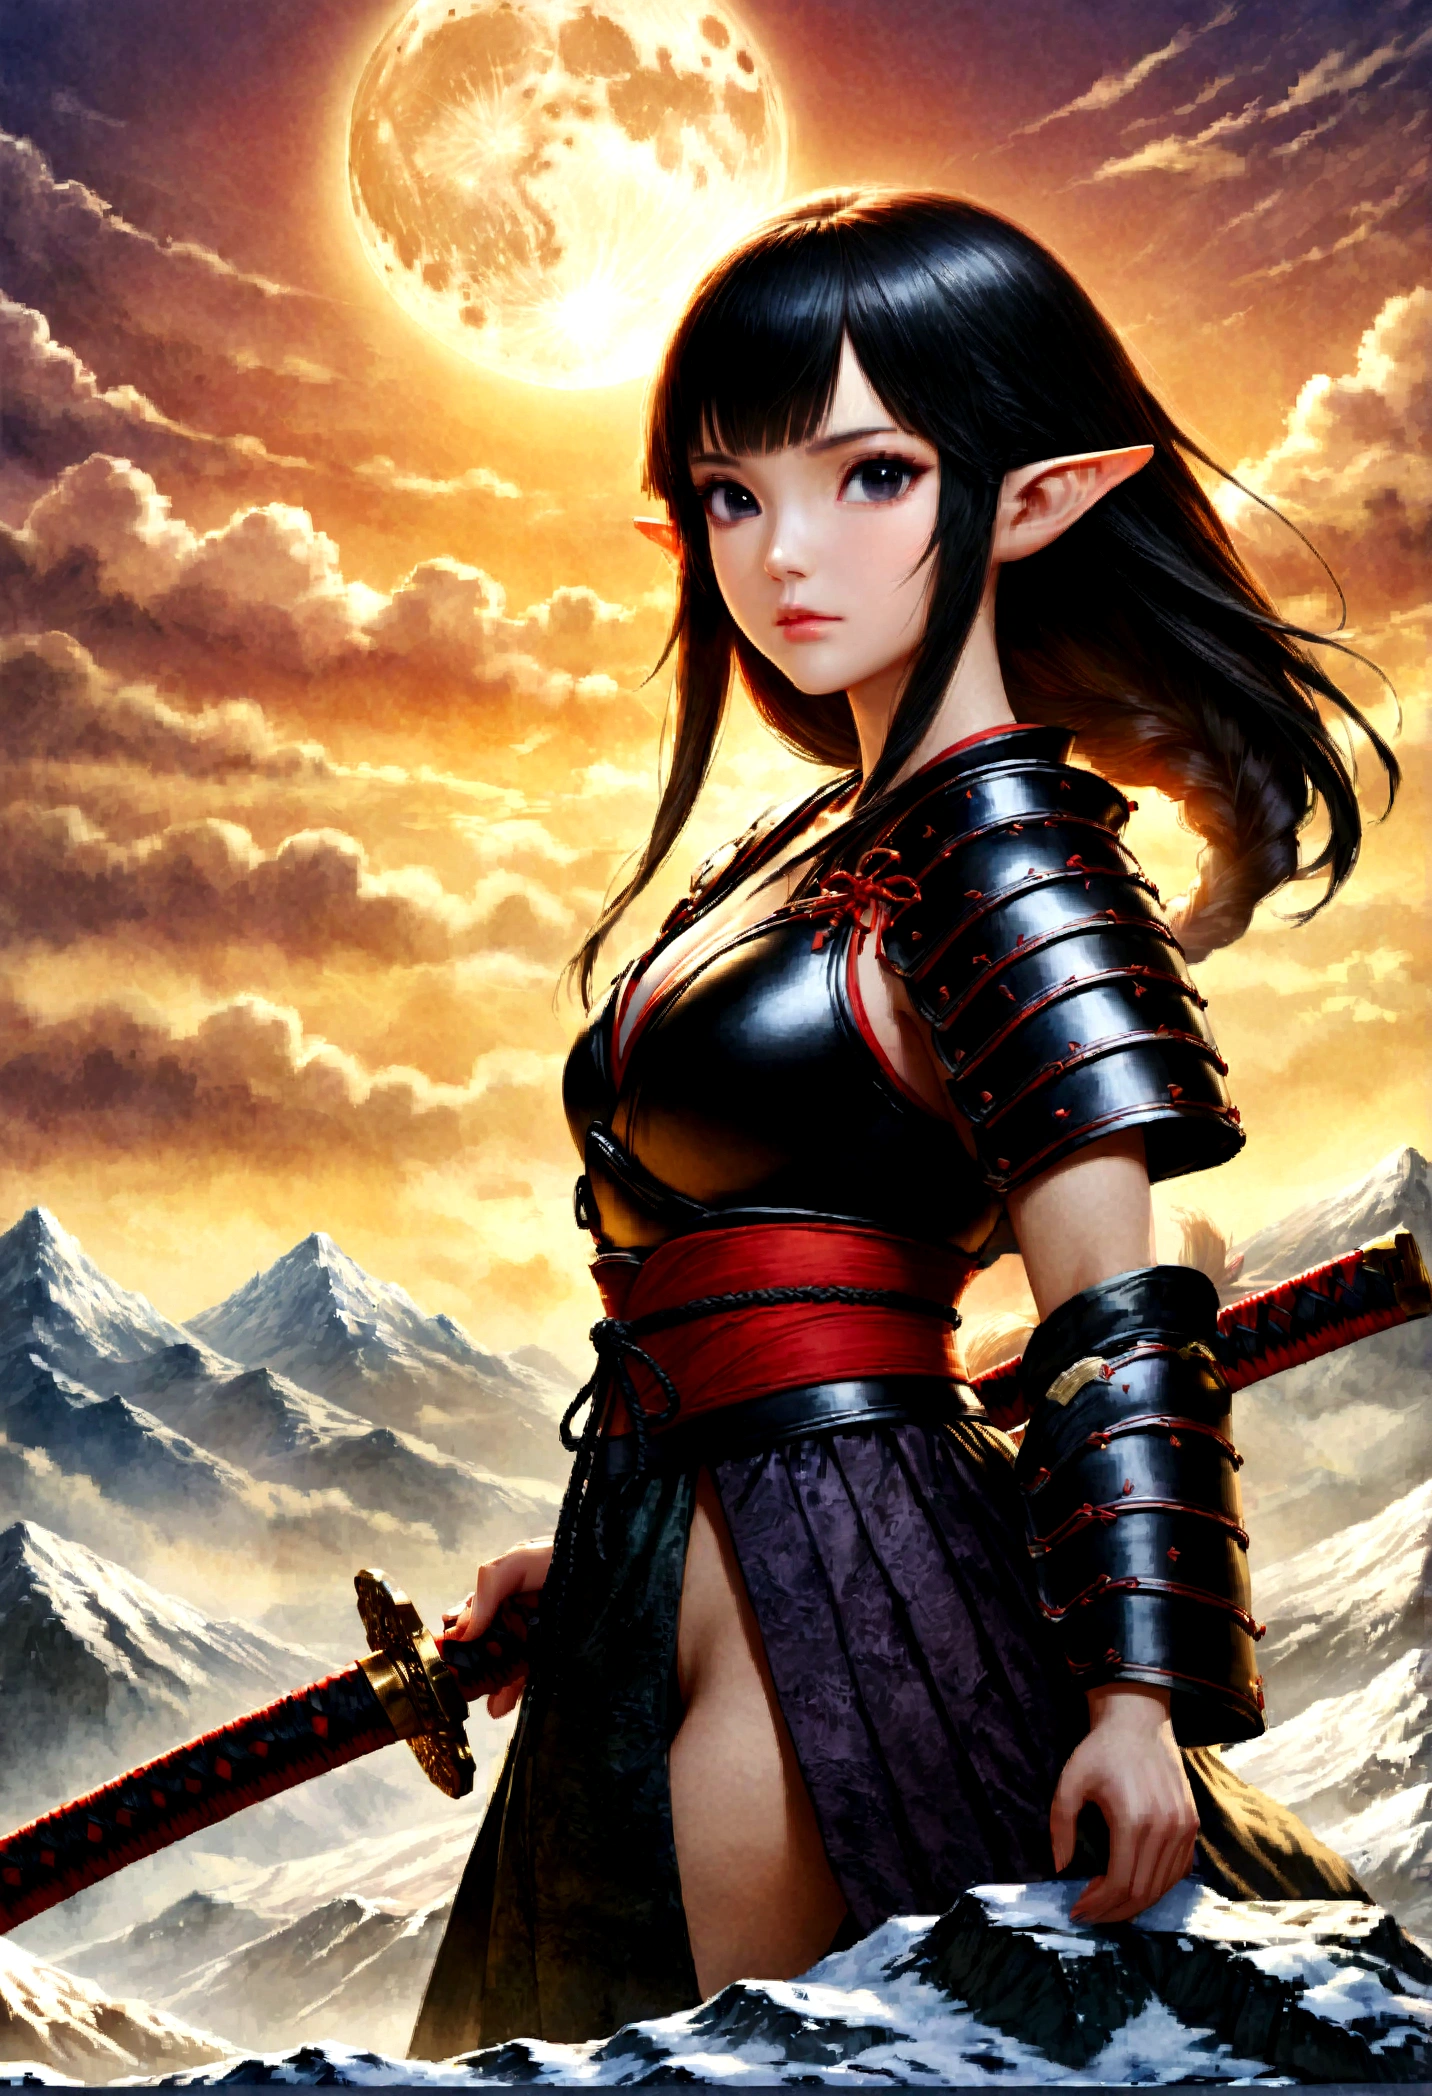 art fantastique, Art du RPG, dark art fantastique, une femme samouraï elfe, prêt à se battre, elle porte une armure de samouraï traditionnelle, armé d&#39;un katana, elle se tient au sommet de la montagne à l&#39;aube, exquise belle elfe femelle, cheveux longs, cheveux noirs, Cheveux raides, cheveux tressés, Yeux noirs, yeux intenses, petites oreilles pointues, sommet de montagne fantastique à l&#39;aube fond, lune, étoiles, des nuages, Dieu rayons, silhouette de lumière naturelle douce, Angle dynamique, photoréalisme, Vue panoramique, ultra meilleur réaliste, meilleurs détails, 16k, [ultra détaillé], chef-d&#39;œuvre, Meilleure qualité, (extrêmement détaillé), photoréalisme, profondeur de champ, aquarelle traditionnelle